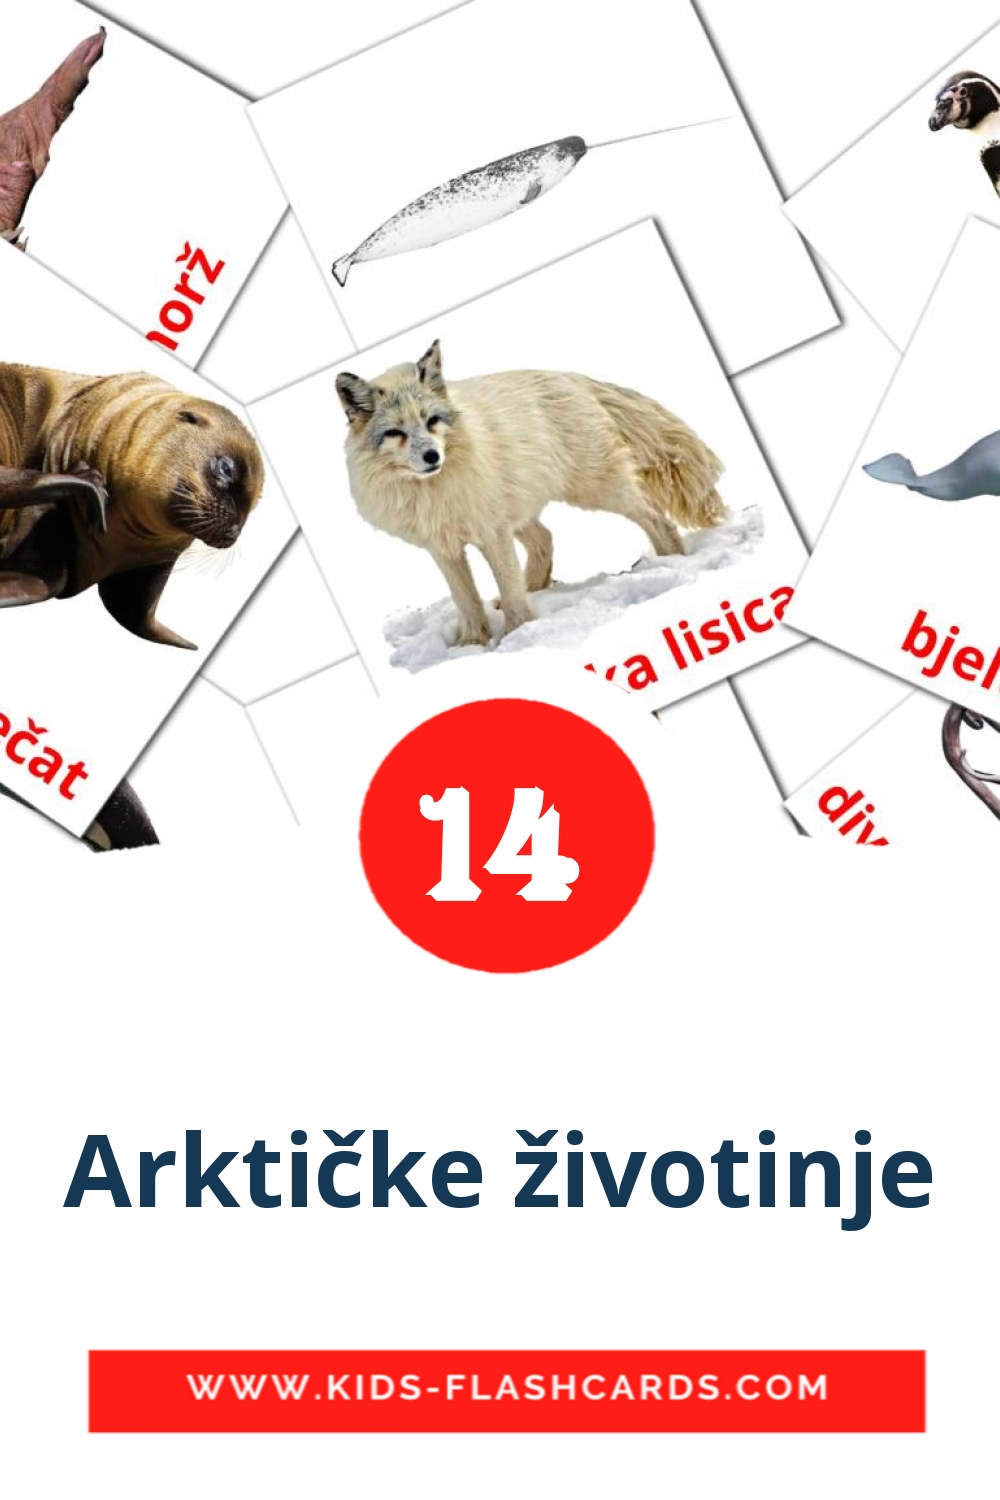 14 cartes illustrées de Arktičke životinje pour la maternelle en croate